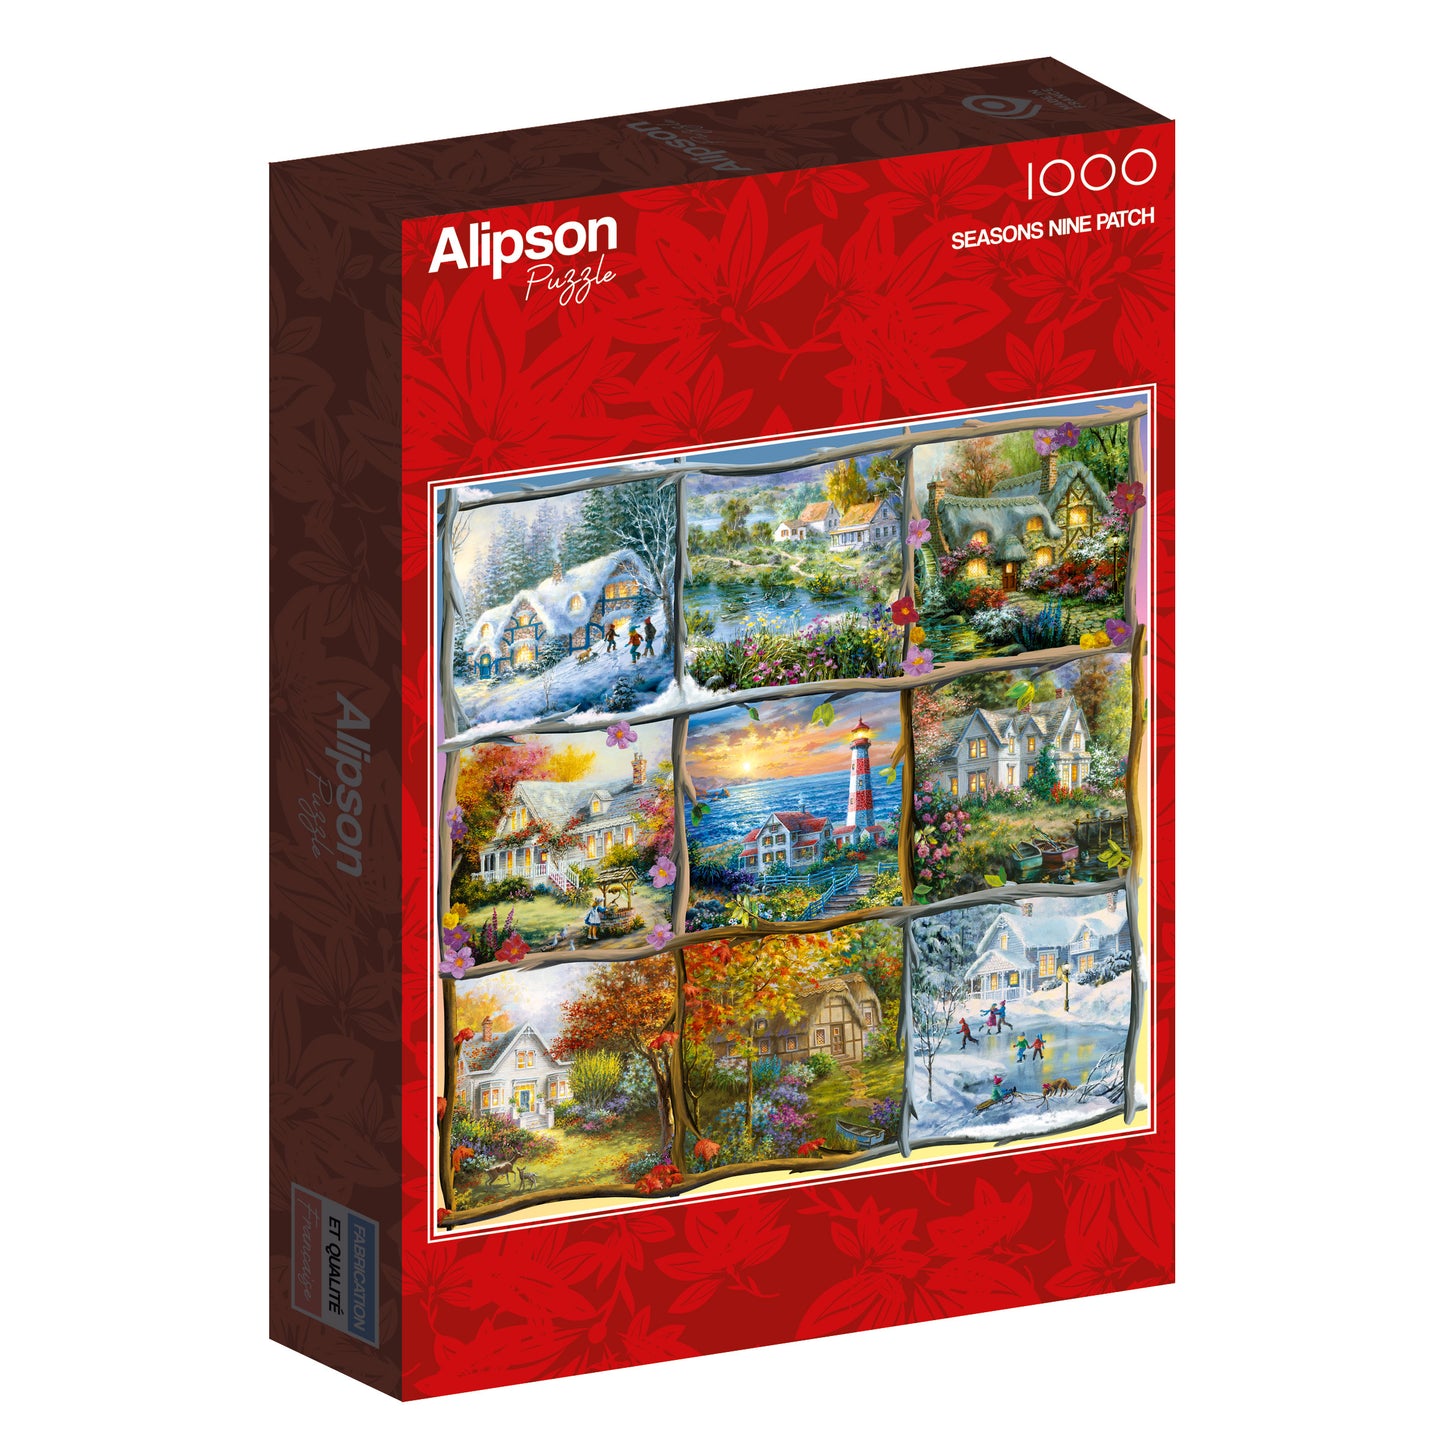 Alipson - Seasons Nine Patch - 1000 Piece Jigsaw Puzzle